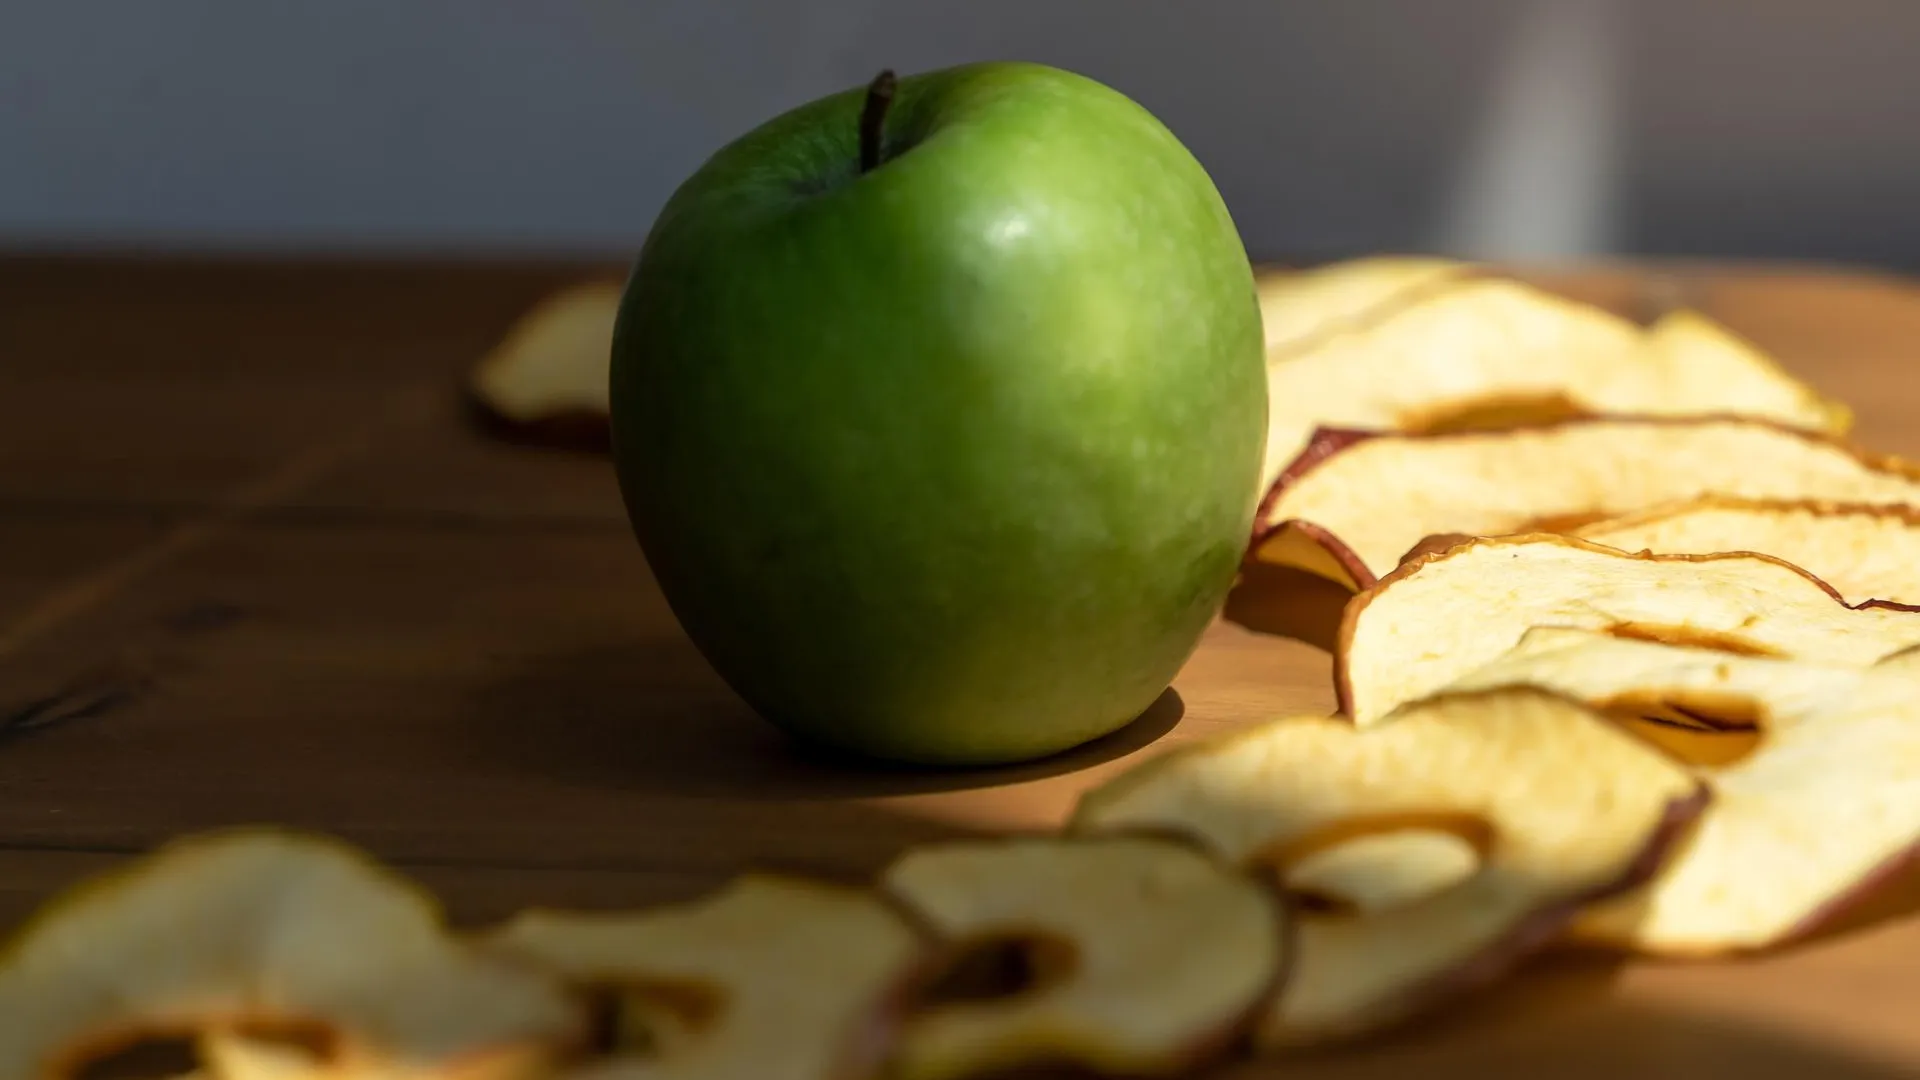 Экологическая акция по переработке яблок и арбузов стартовала в Подмосковье